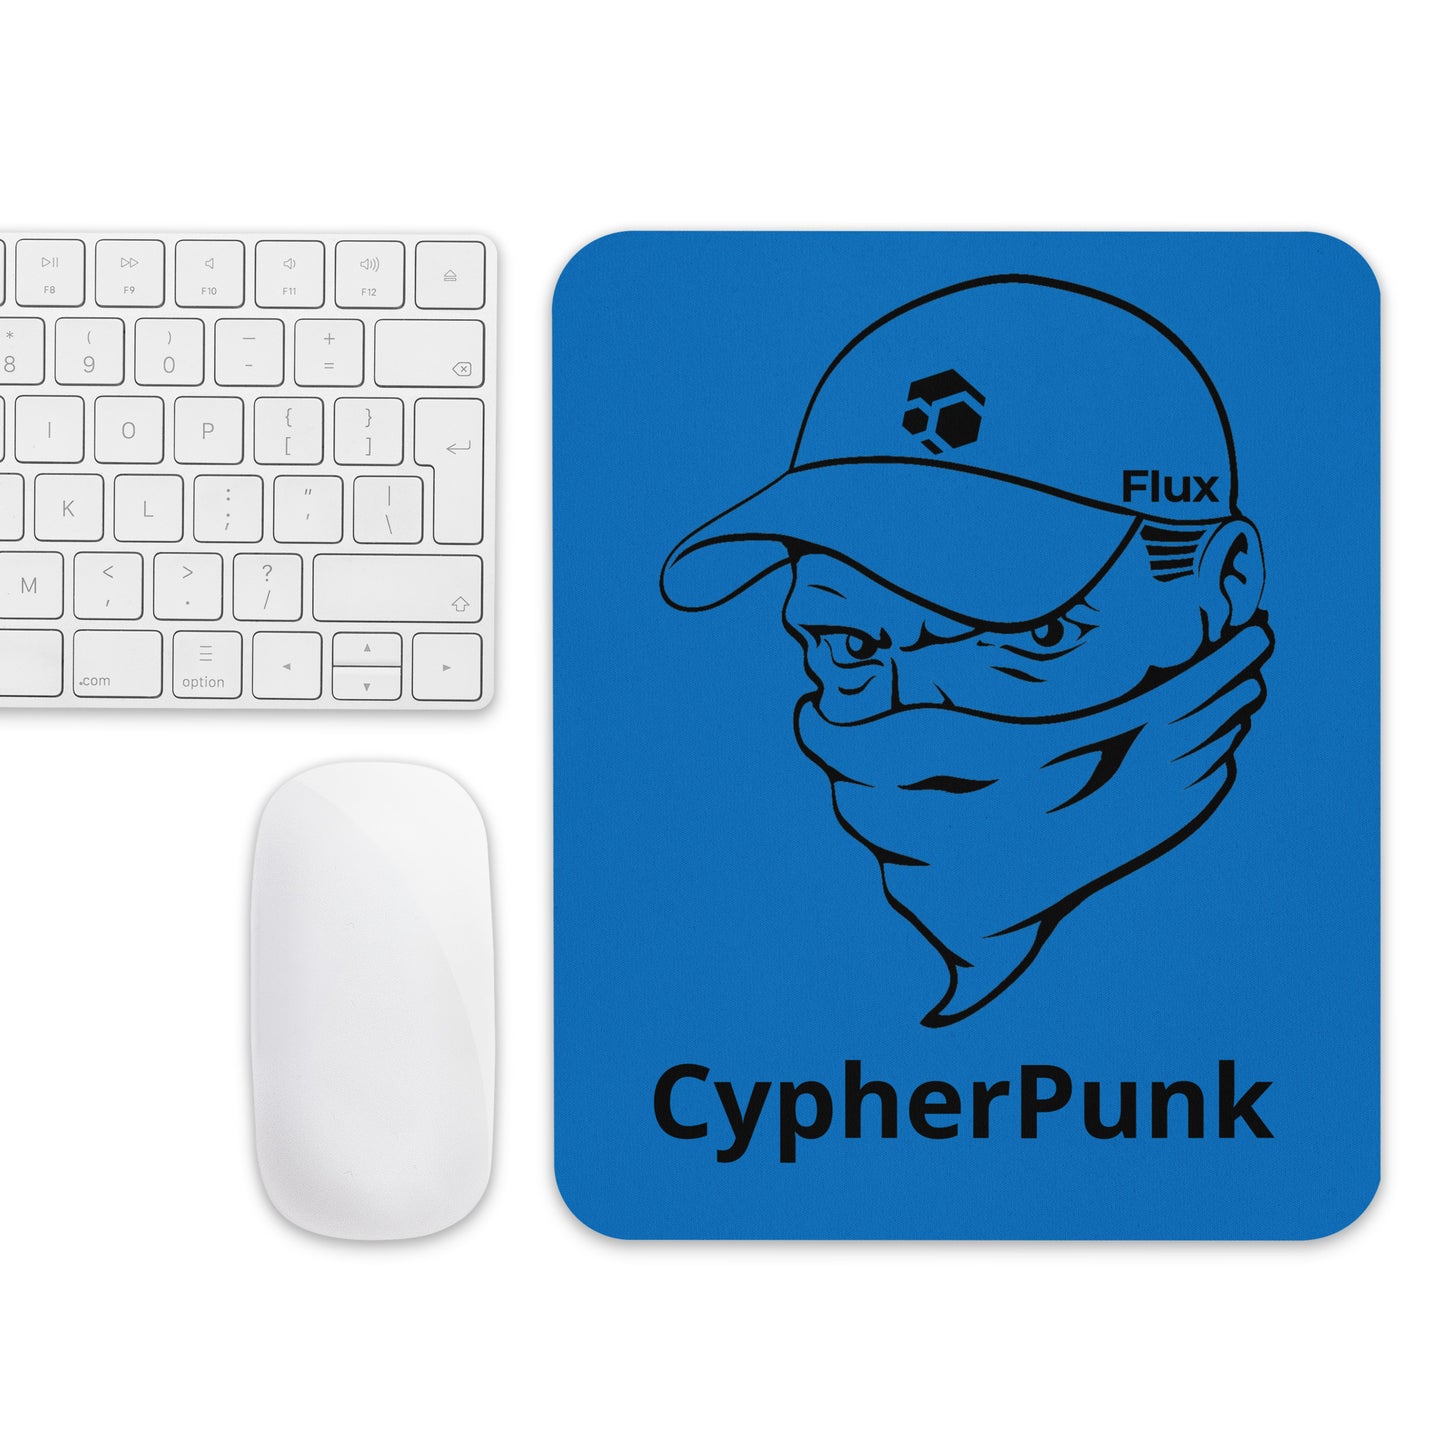 FLUX "Cypherpunk" Mouse Pad